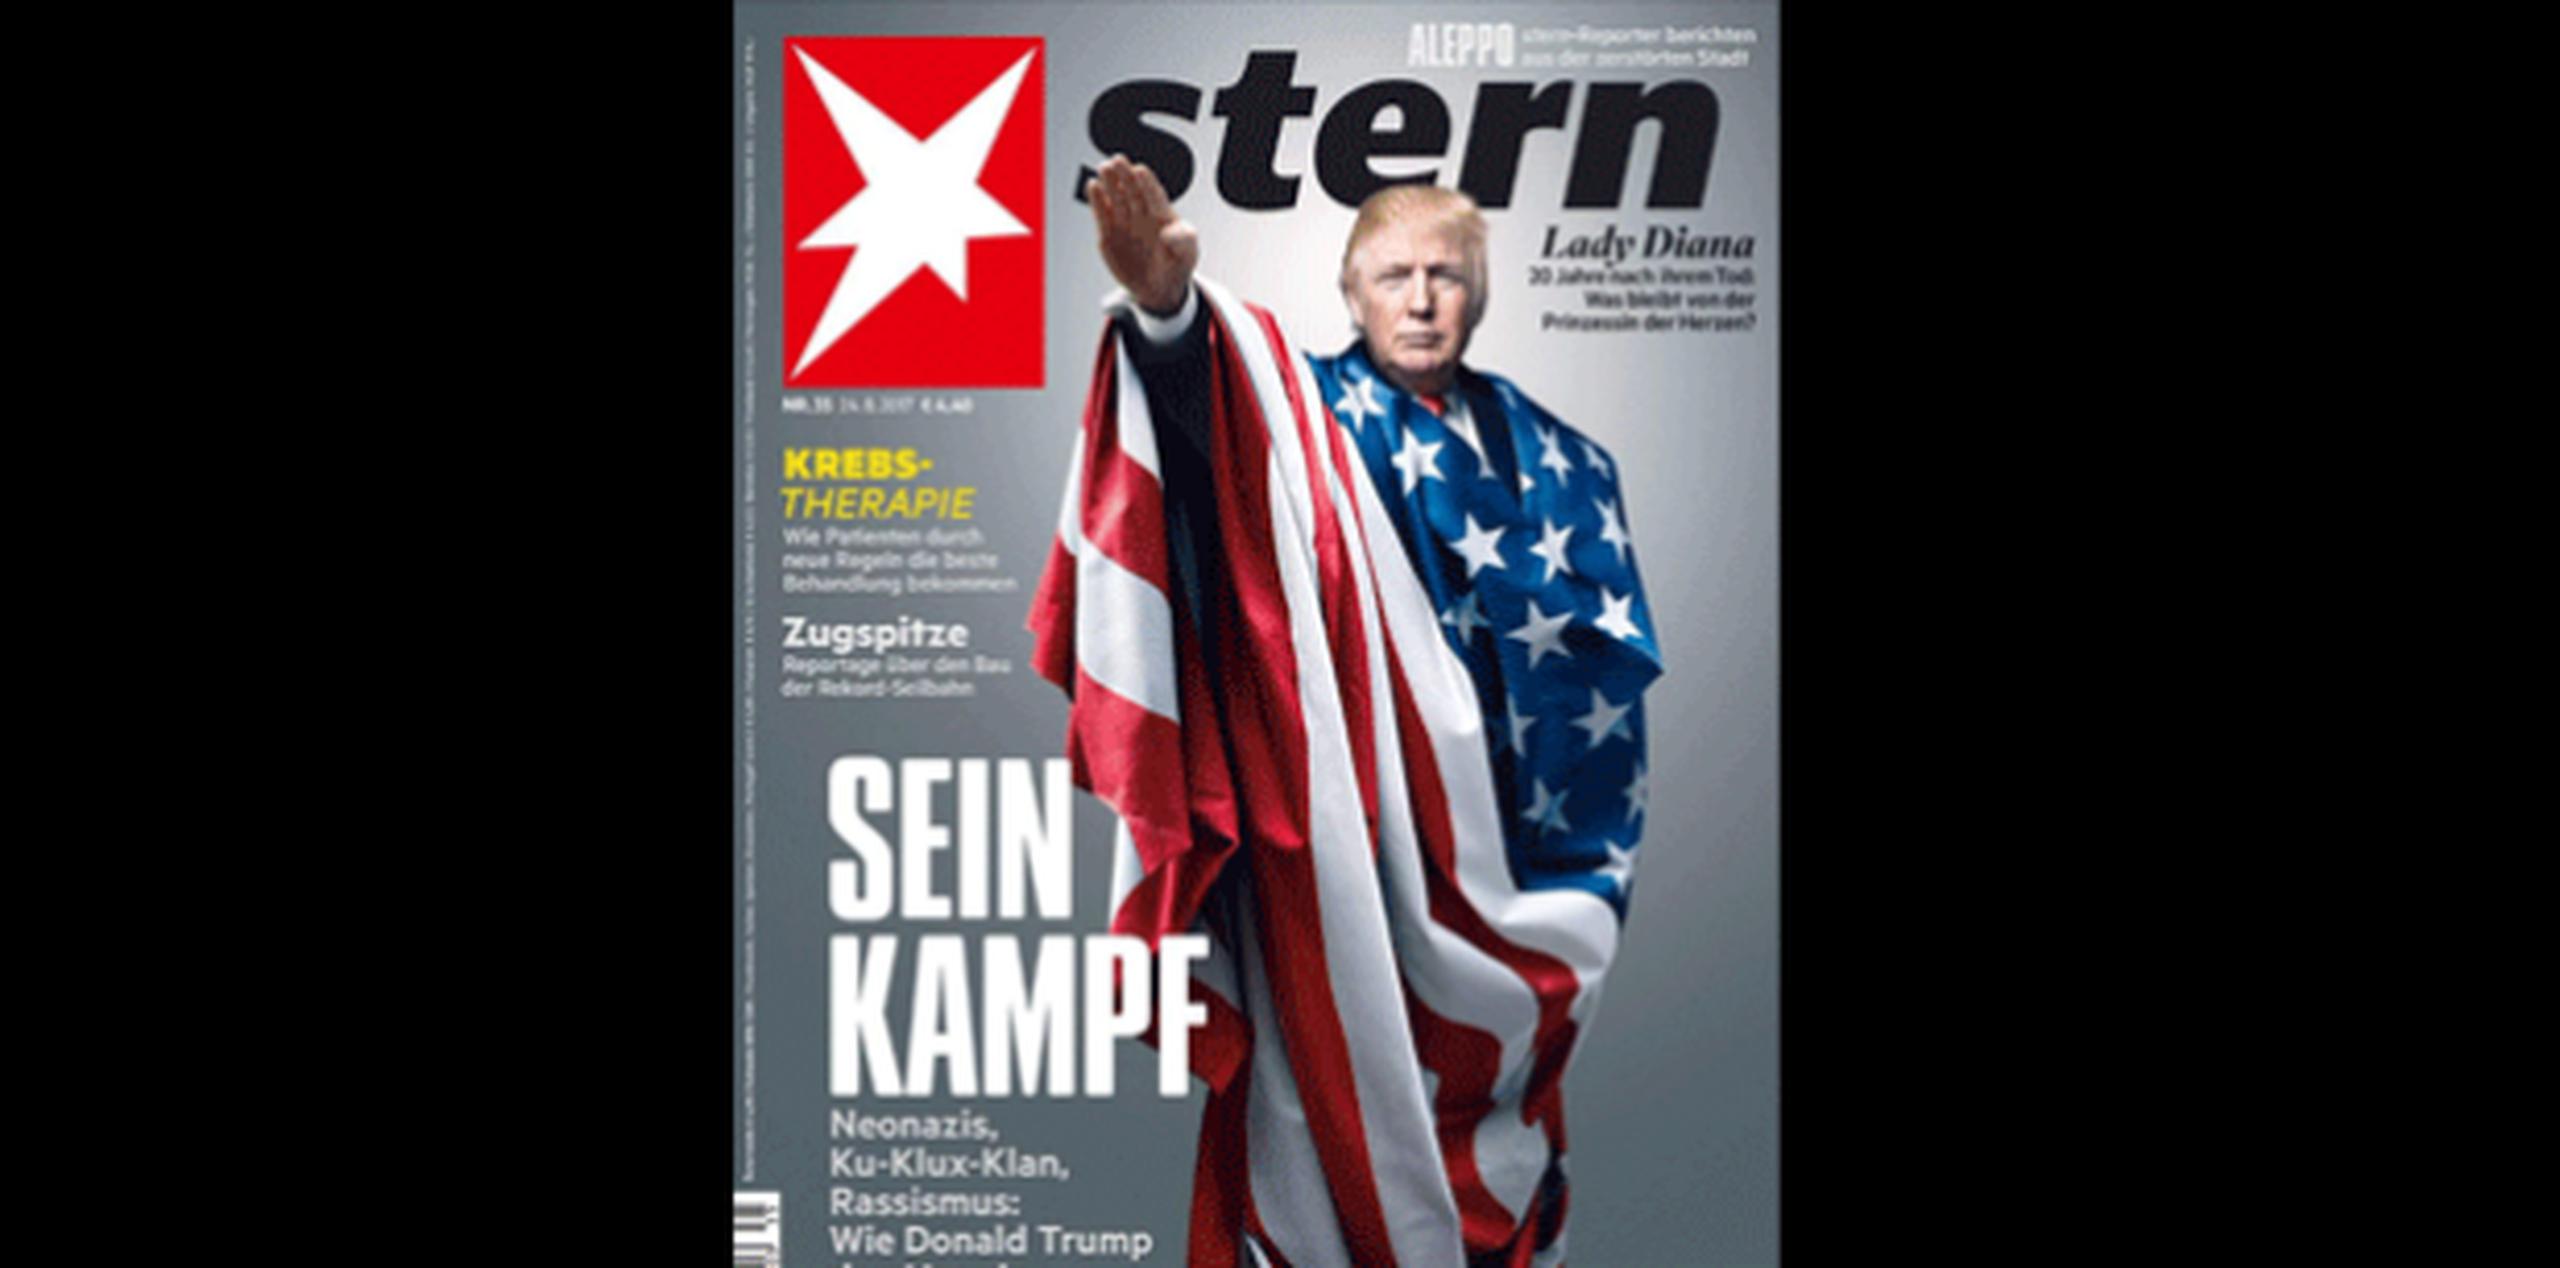 La revista Stern publicó la foto acompañando un artículo con el título "Sein Kampf" ("Su lucha"), una alusión a la infame obra de Adolfo Hitler "Mein Kampf" ("Mi lucha"). (Twitter)